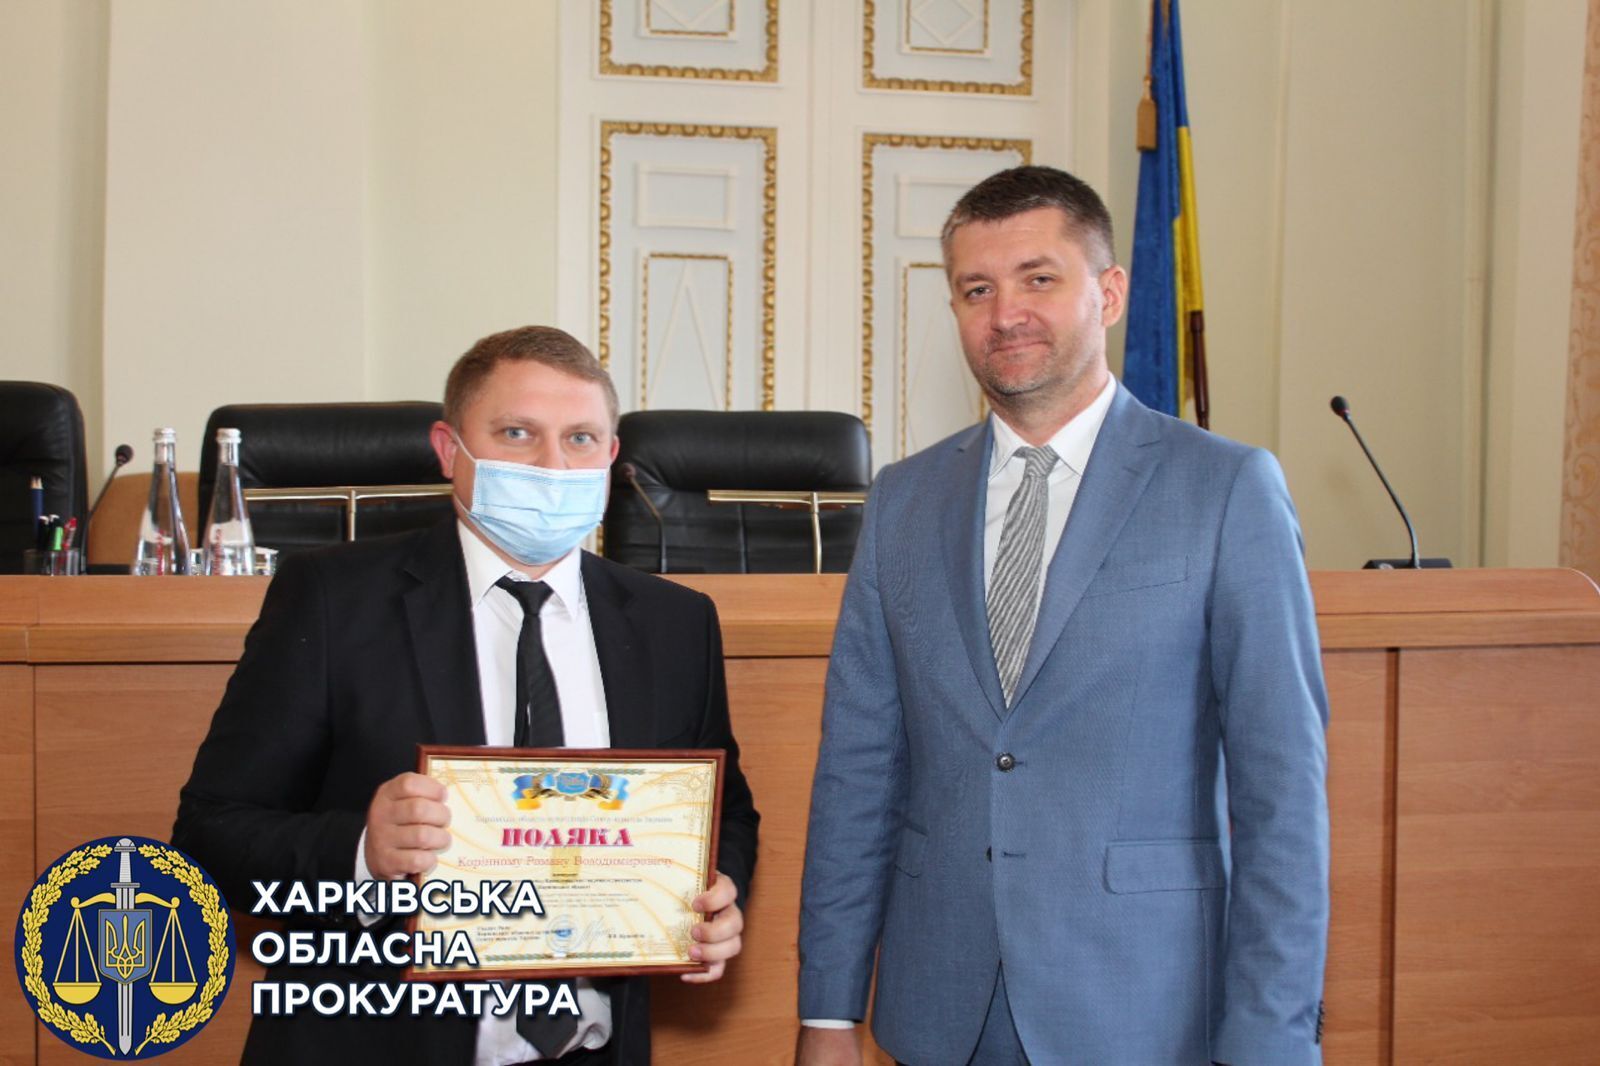 У Харківській обласній прокуратурі відбулися урочистості з нагоди Дня юриста (ФОТО)